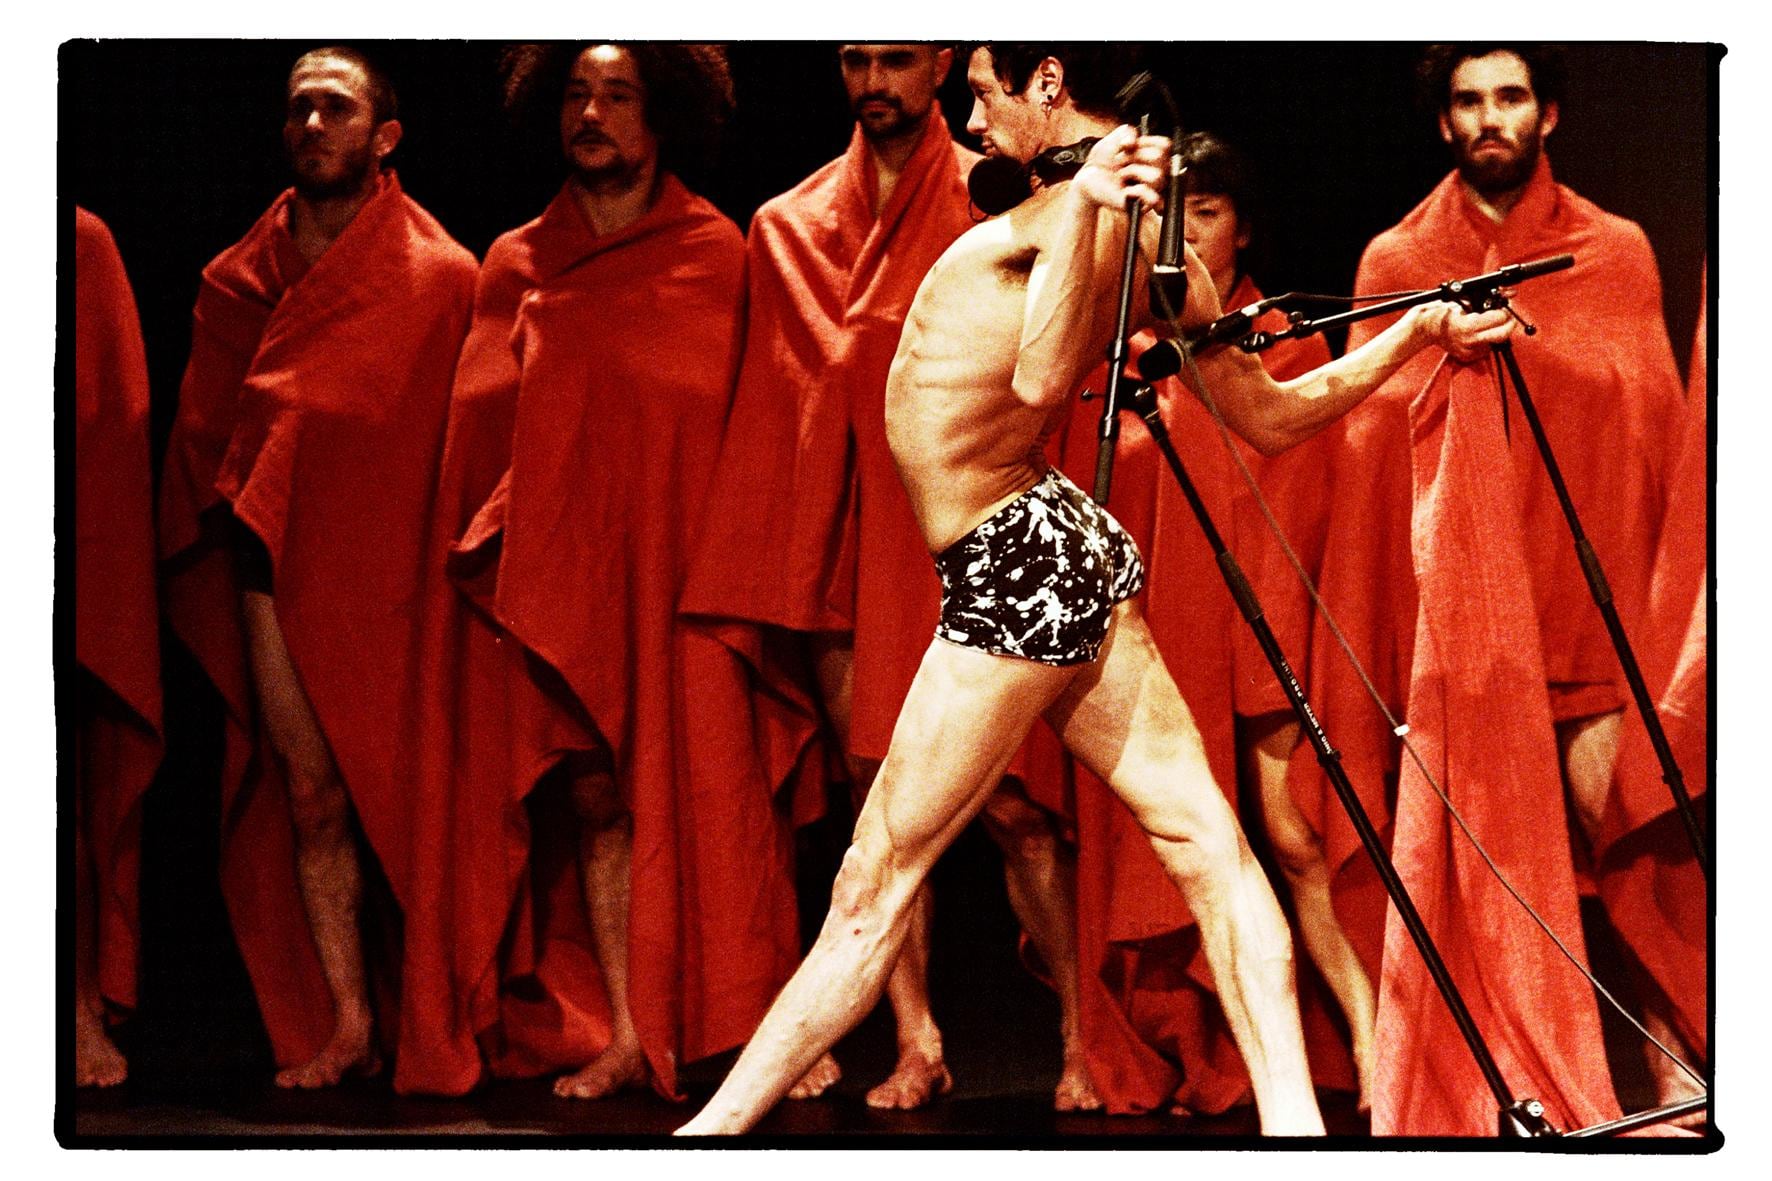 Un danseur en sous-vêtements cambré, et tenant des micros derrière lui. Il est devant des personnes drapées de rouge.